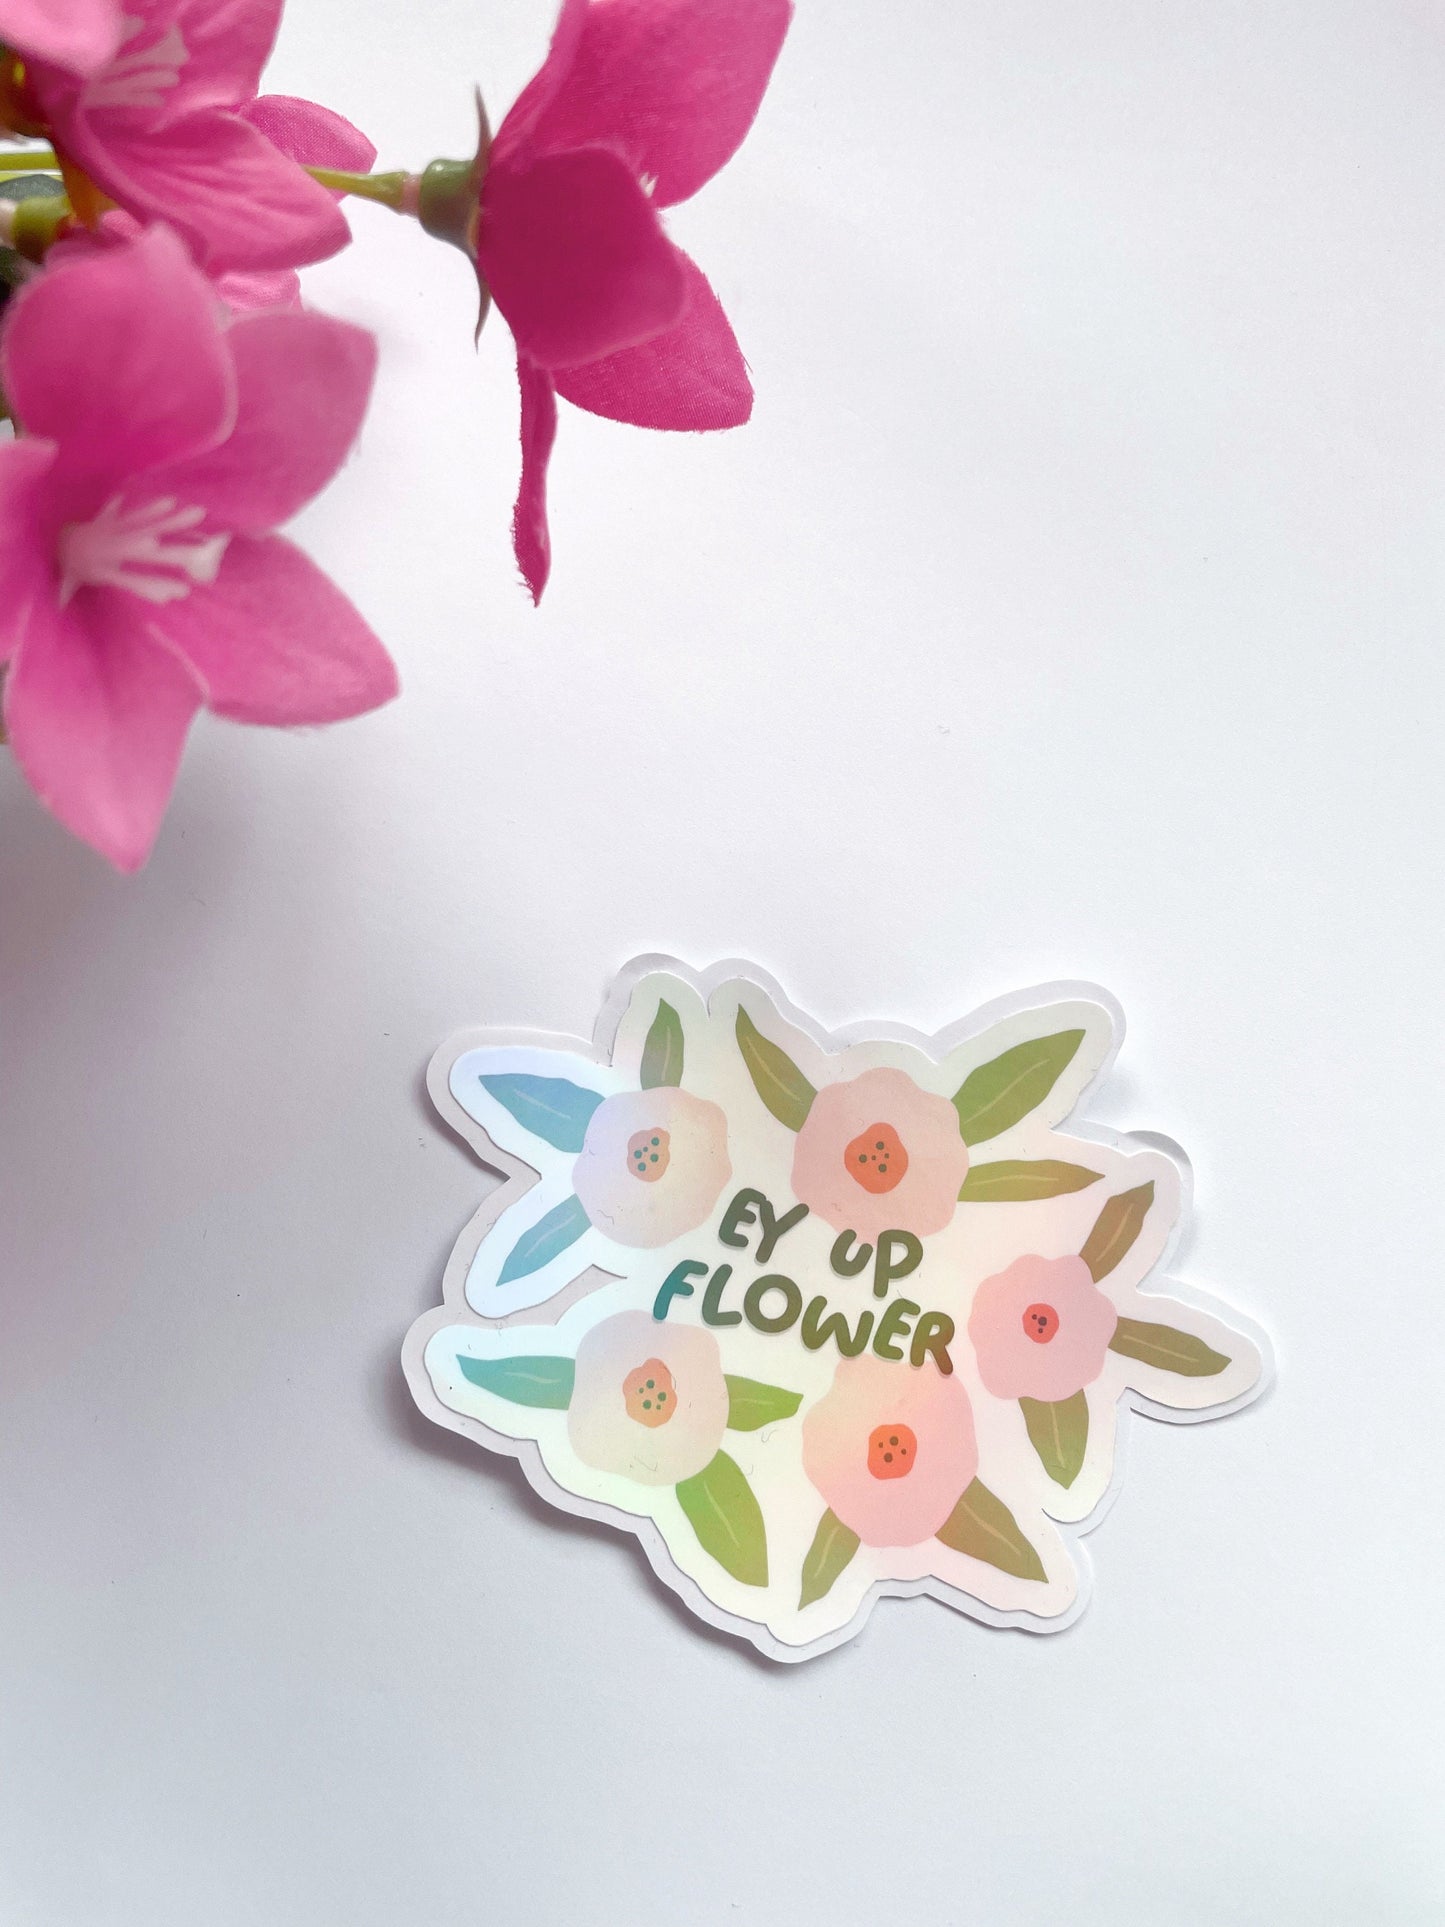 Ey Up Flower Sticker